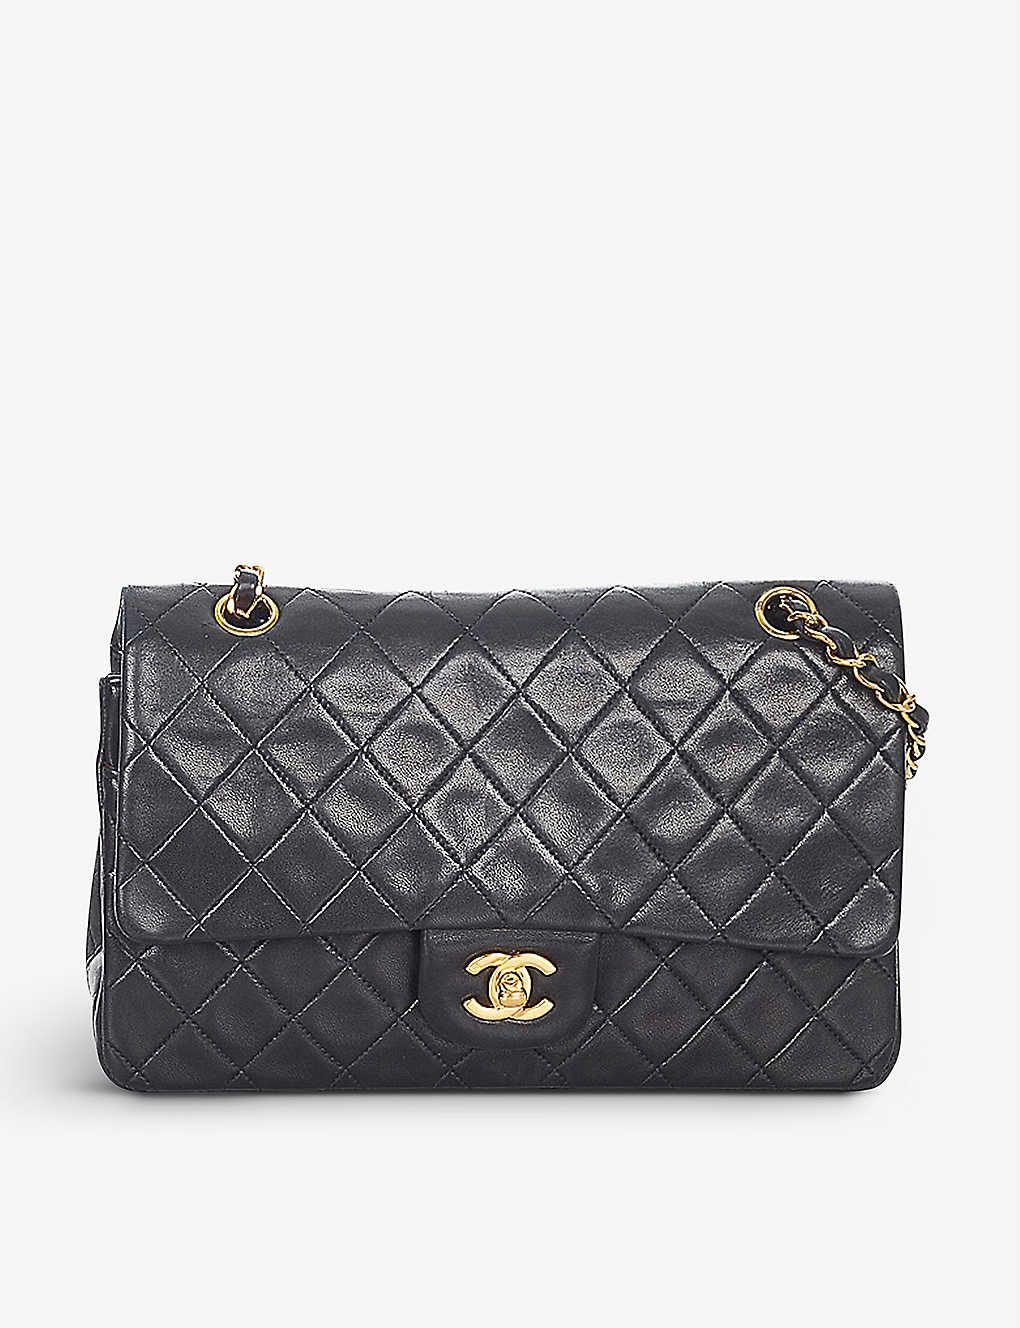 RESELLFRIDGES
          
          Pre-loved Chanel leather cross-body bag | Selfridges